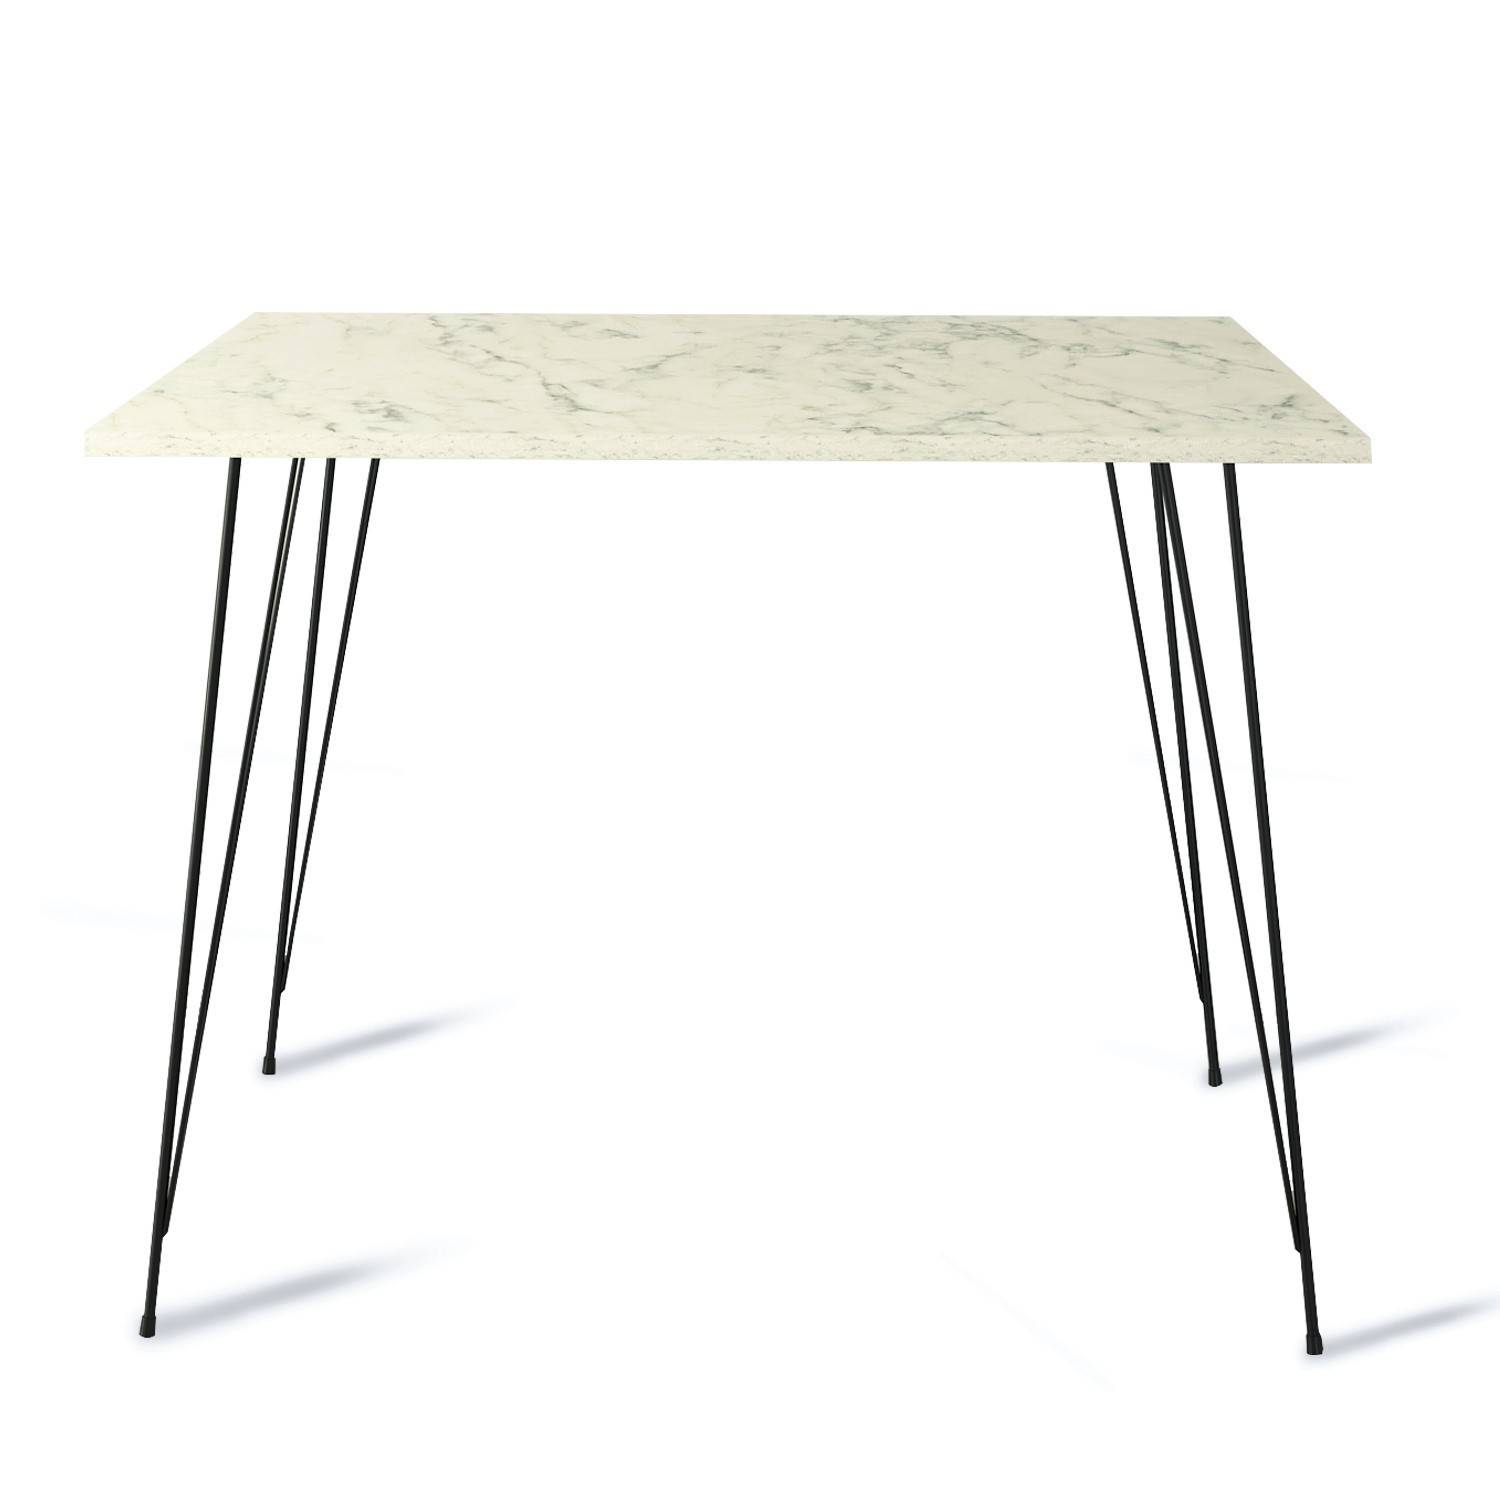 Tavolo da pranzo quadrato Meero L90cm Legno effetto marmo bianco e metallo nero